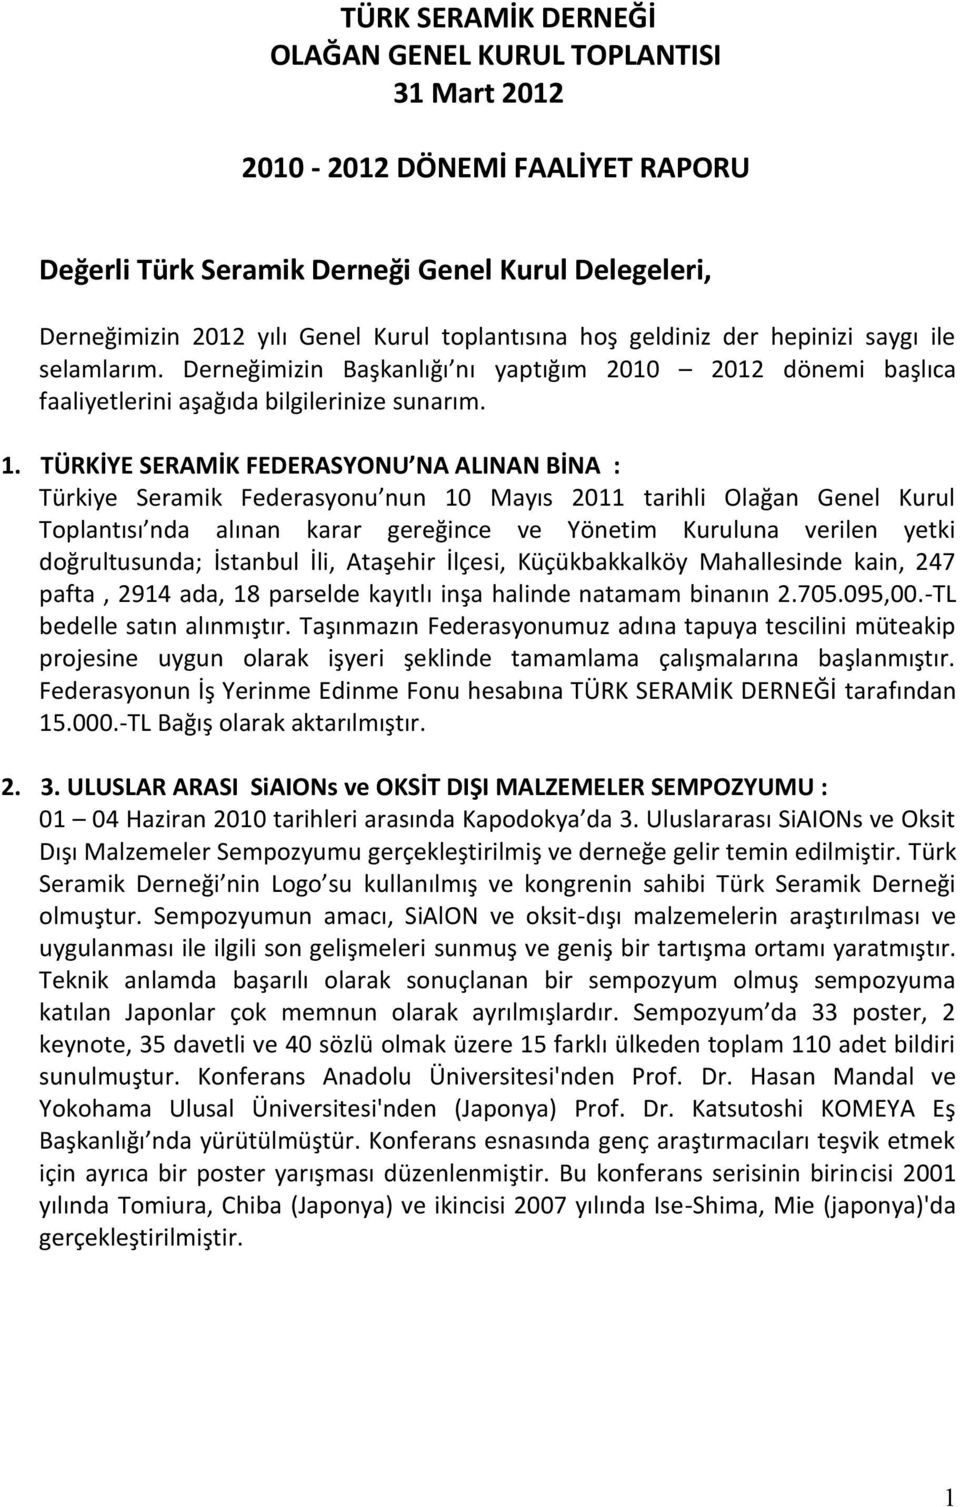 TÜRKİYE SERAMİK FEDERASYONU NA ALINAN BİNA : Türkiye Seramik Federasyonu nun 10 Mayıs 2011 tarihli Olağan Genel Kurul Toplantısı nda alınan karar gereğince ve Yönetim Kuruluna verilen yetki